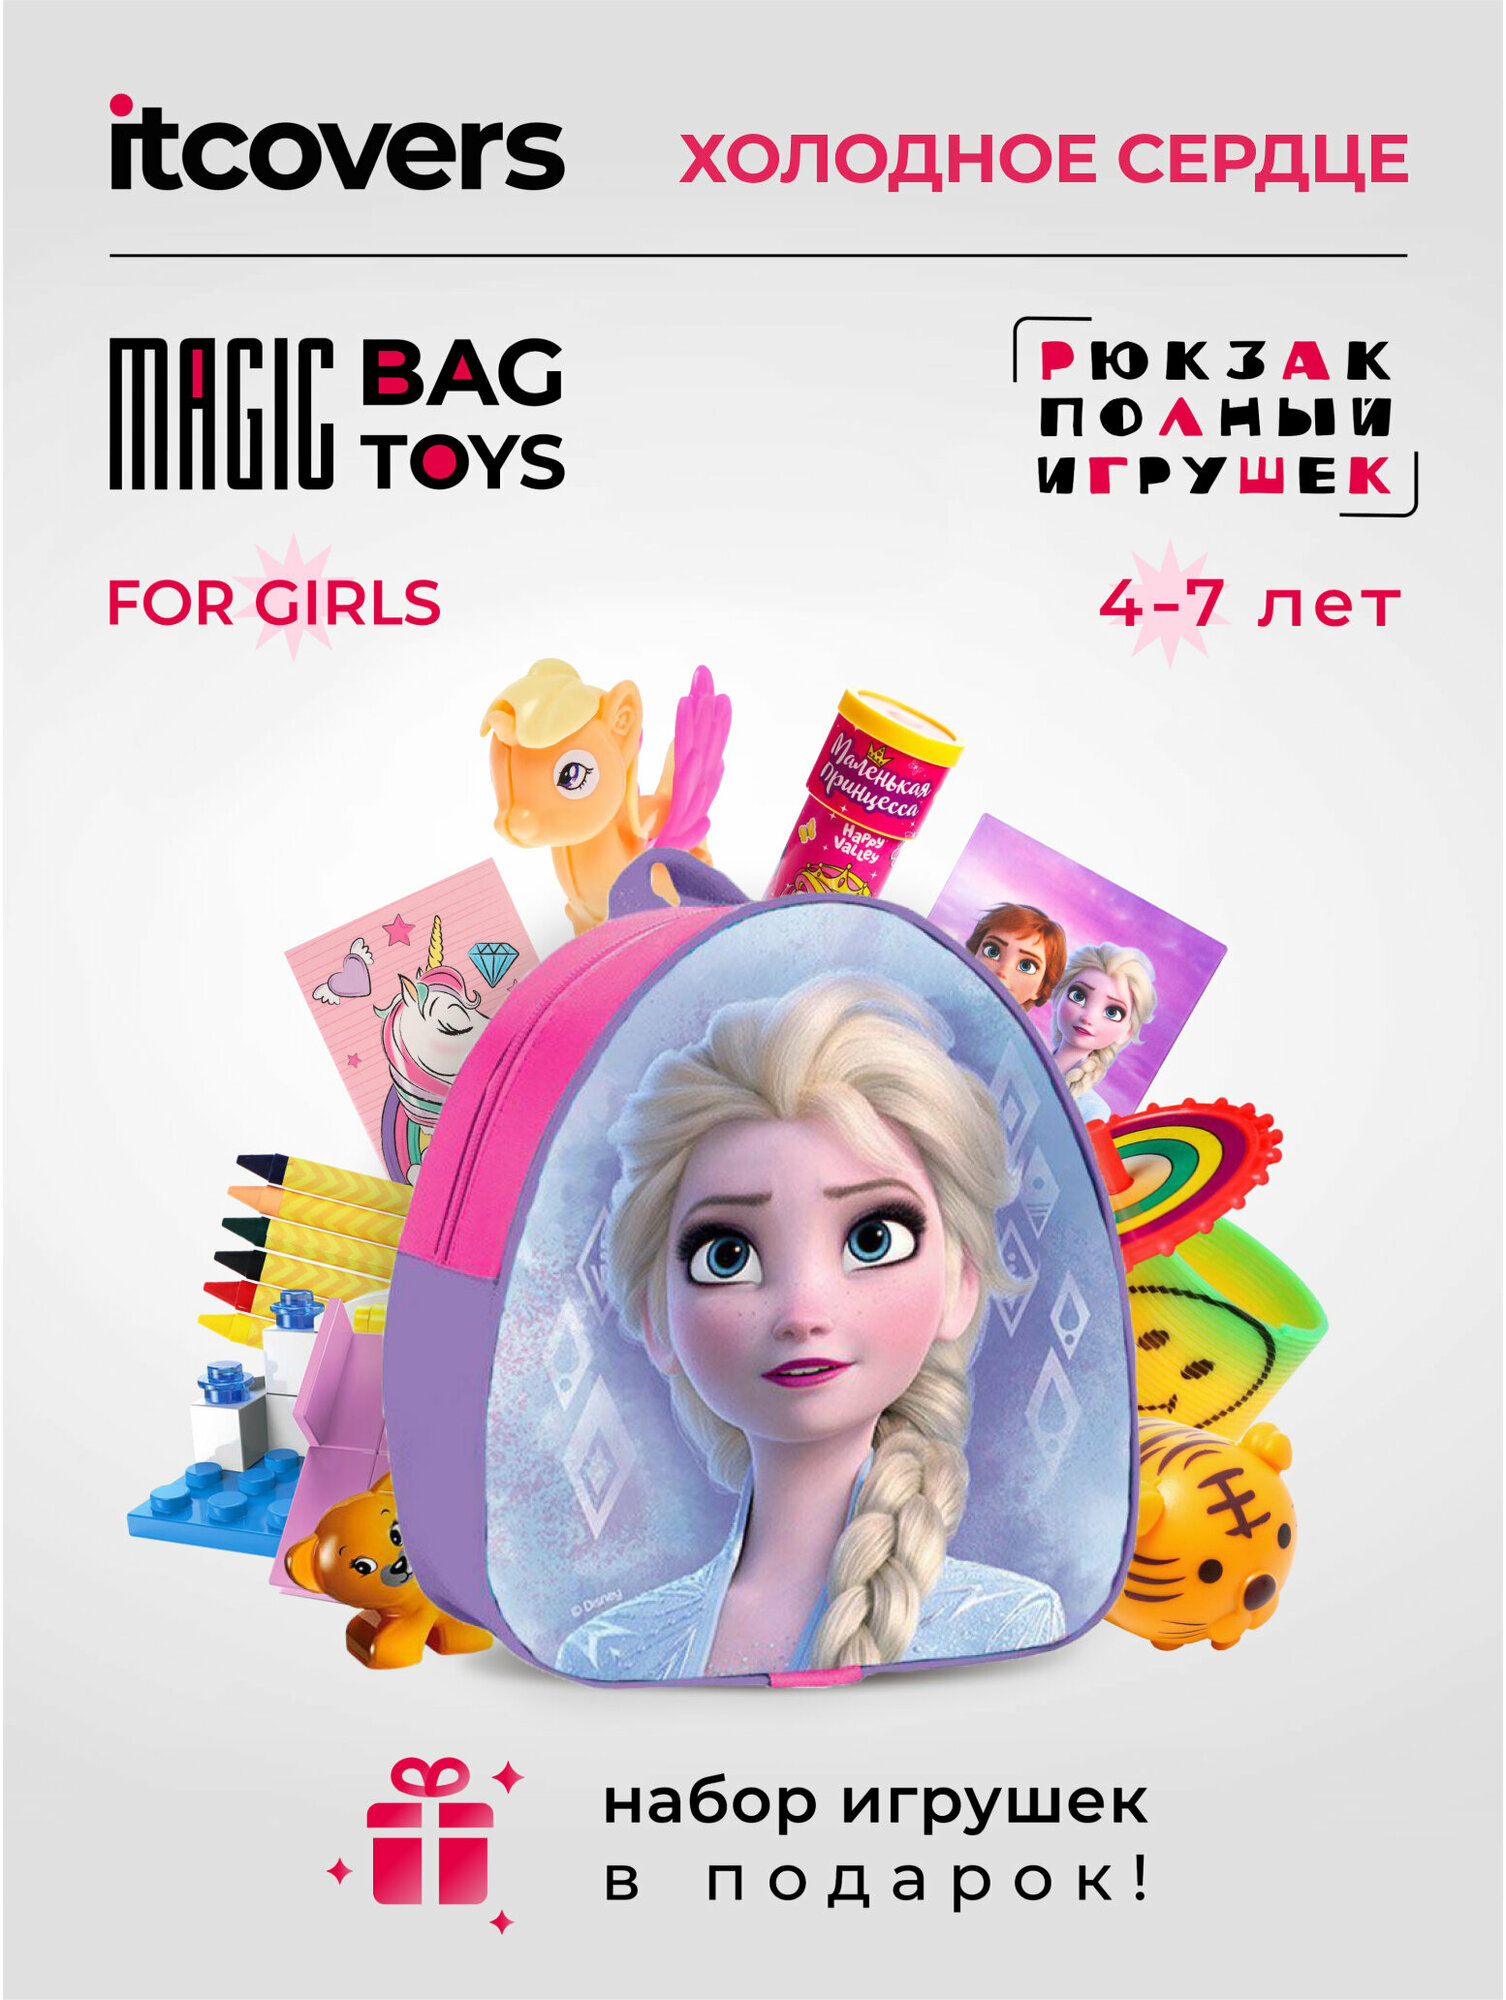 Рюкзак Холодное сердце iTCOVERS Magic bag toys для девочки 4-7 лет с набором игрушек